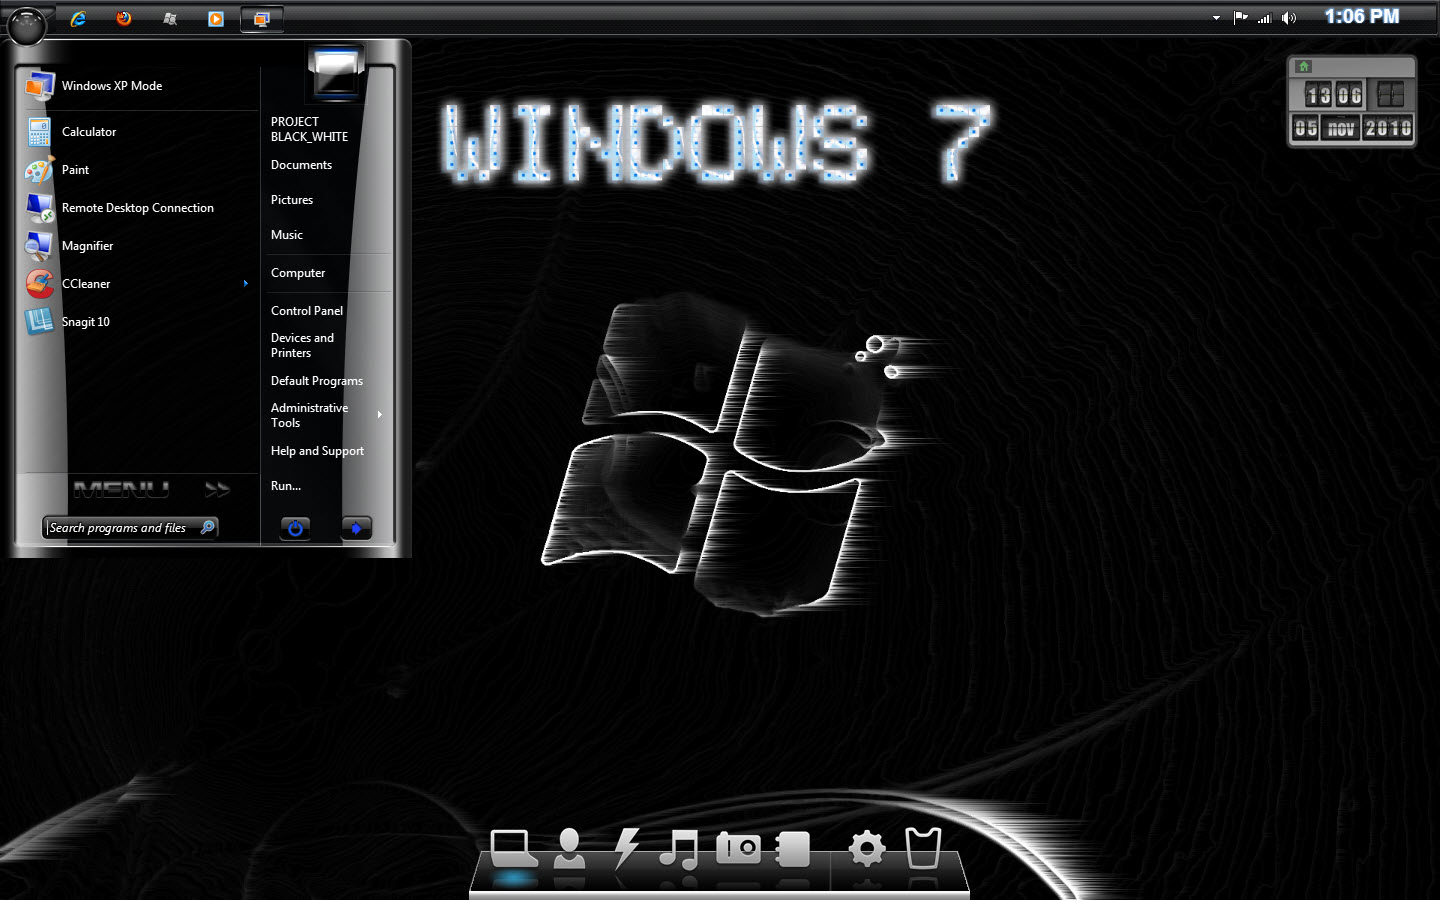 windows 7 loader 1.6.9 by daz rar